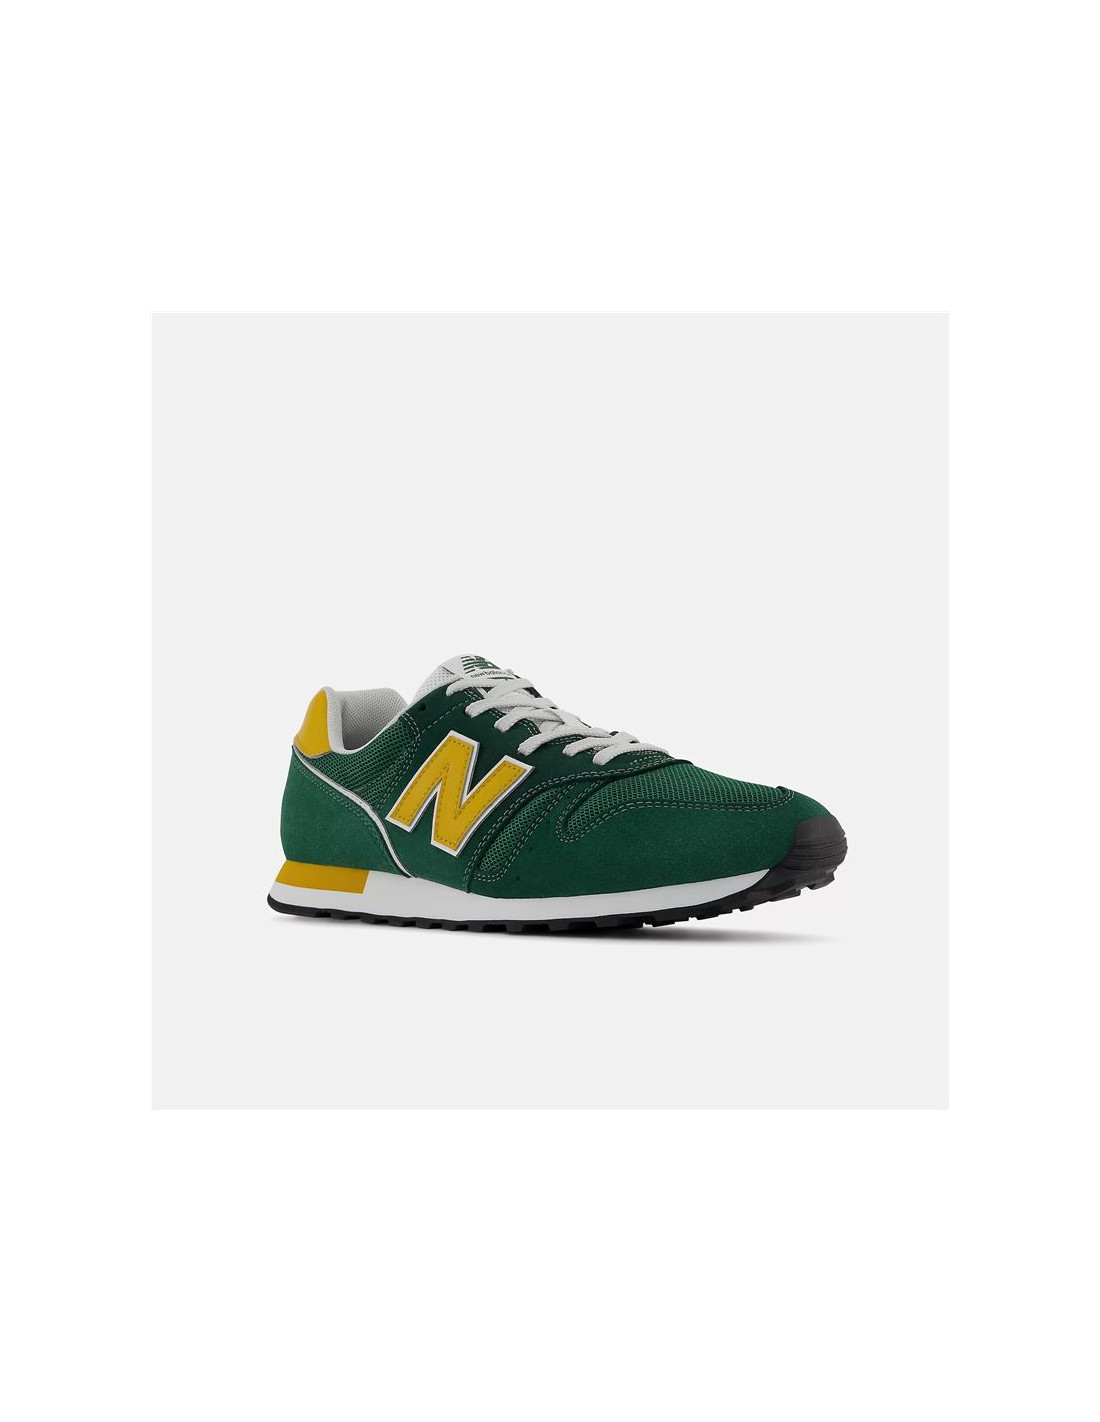 ᐈ Zapatillas Balance 373 v2 Hombre Verde – Atmosfera